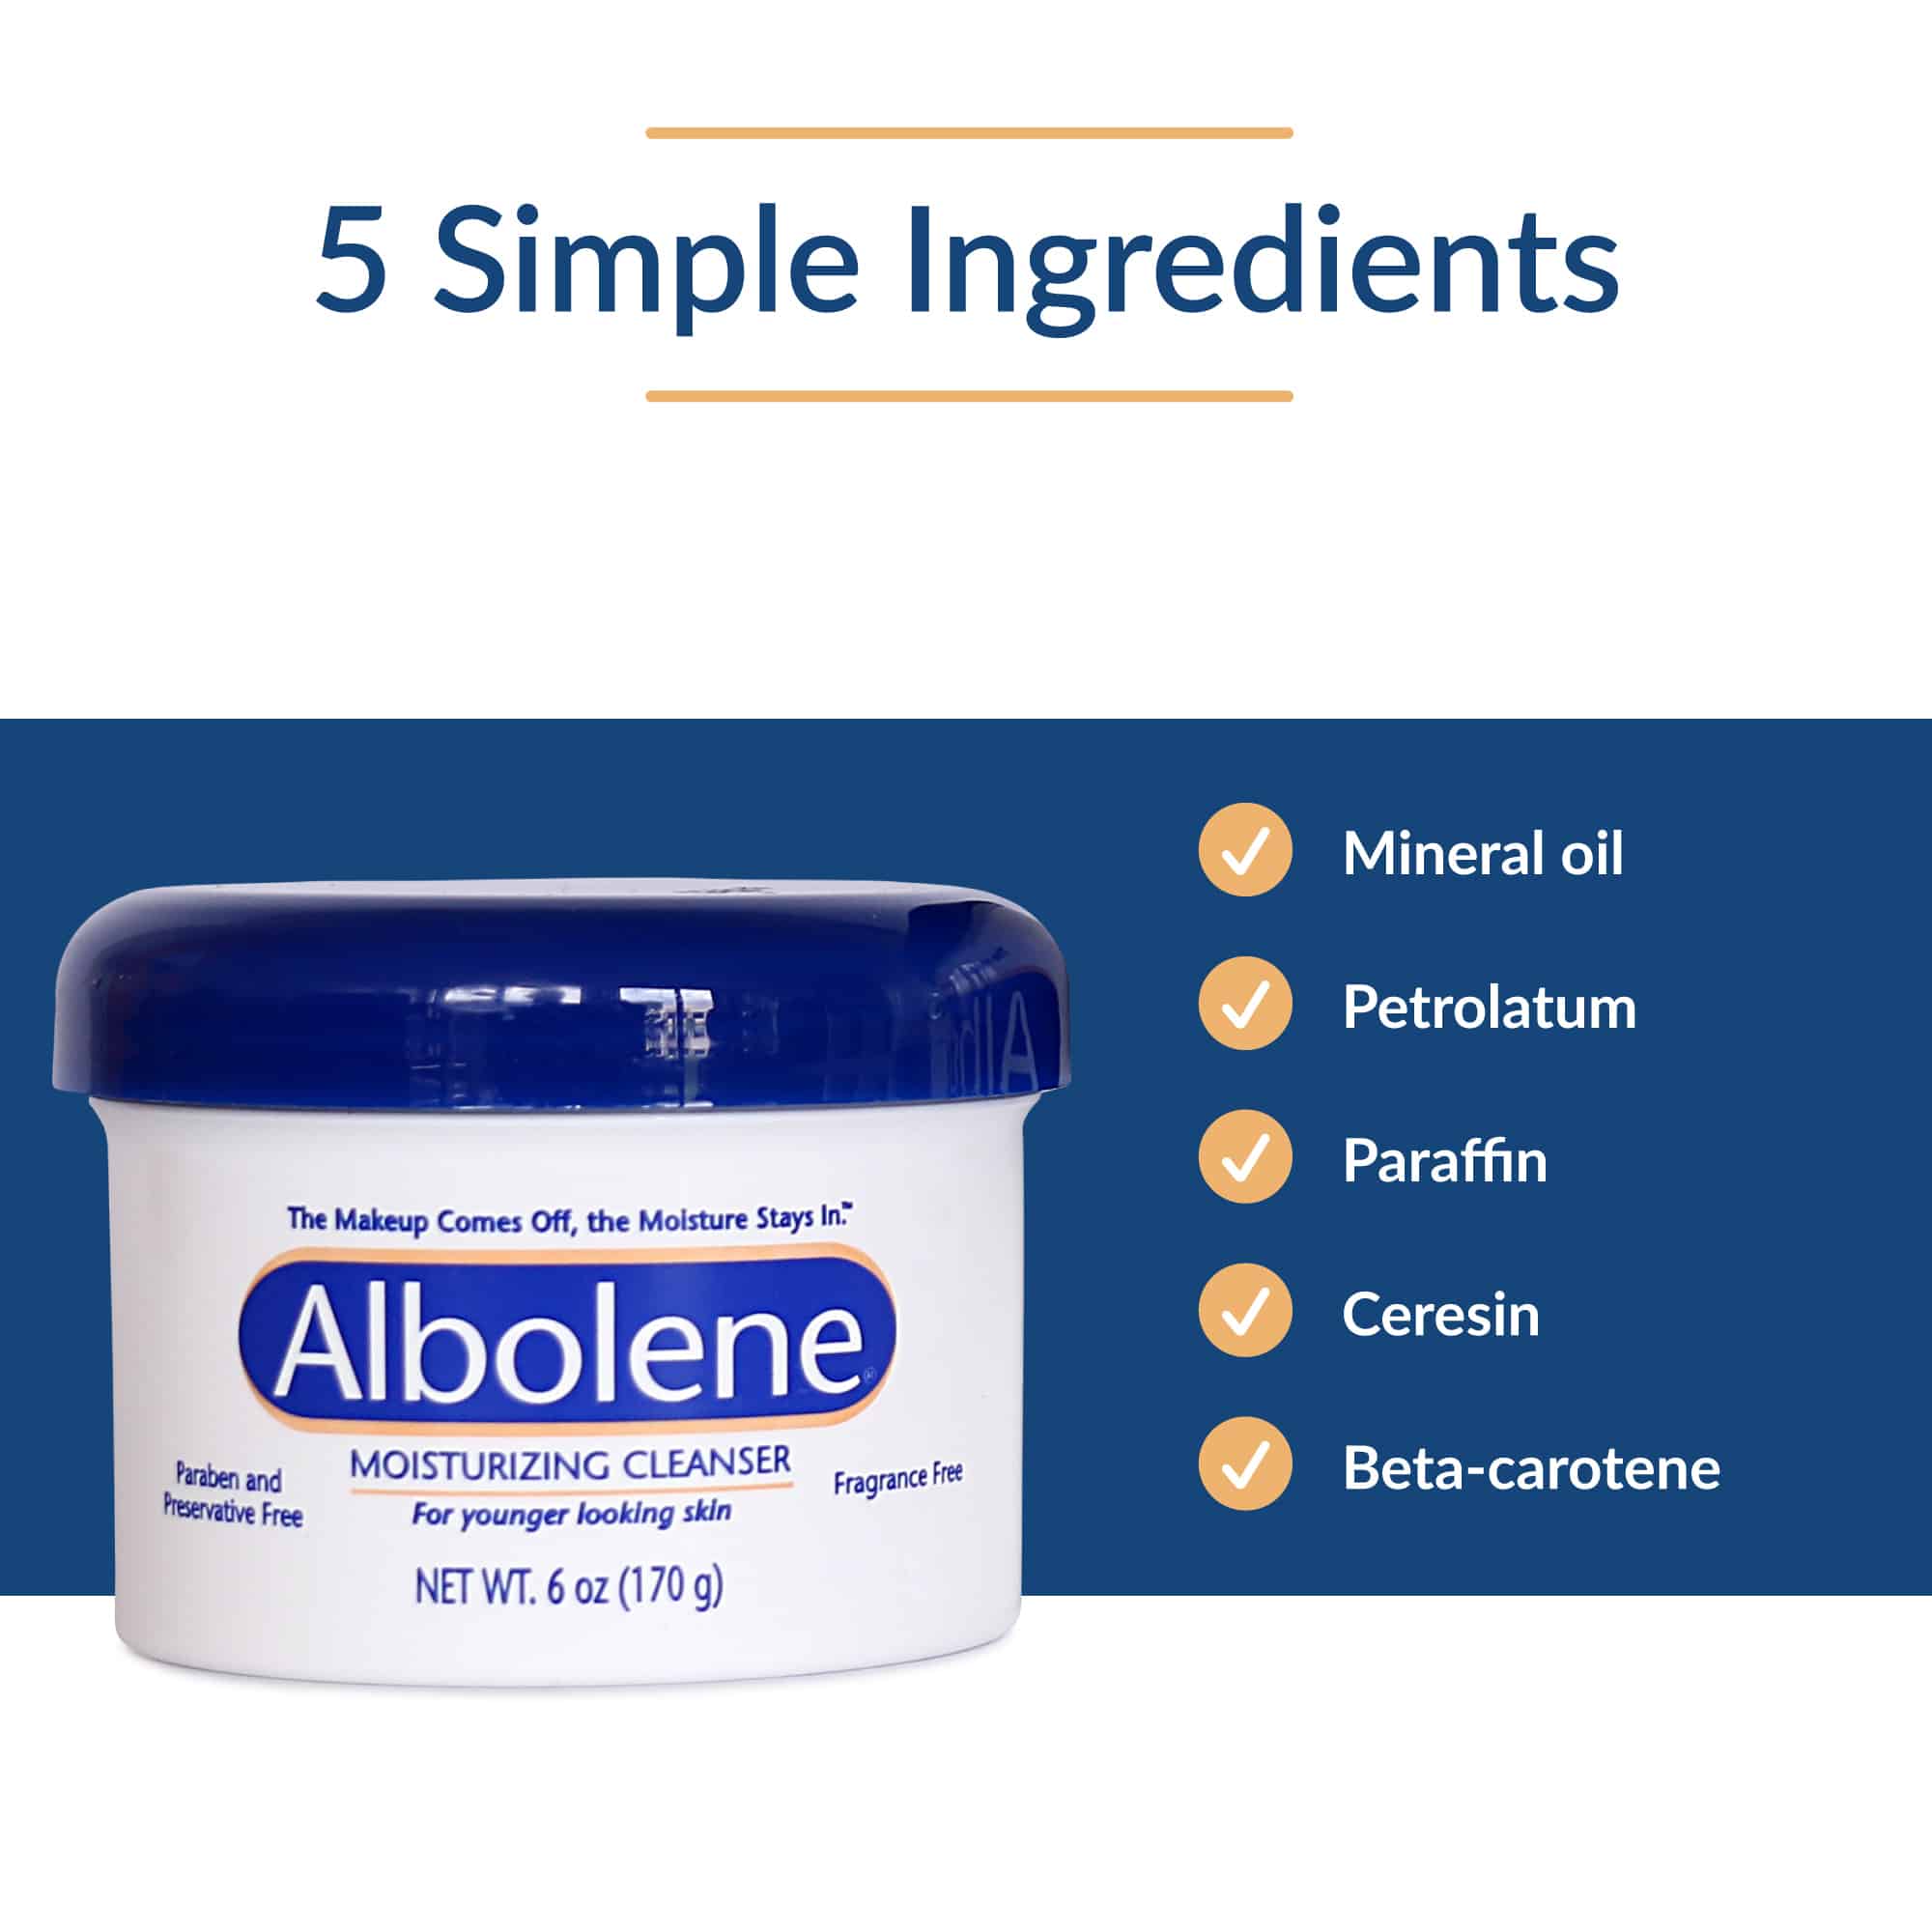 Uses for Albolene